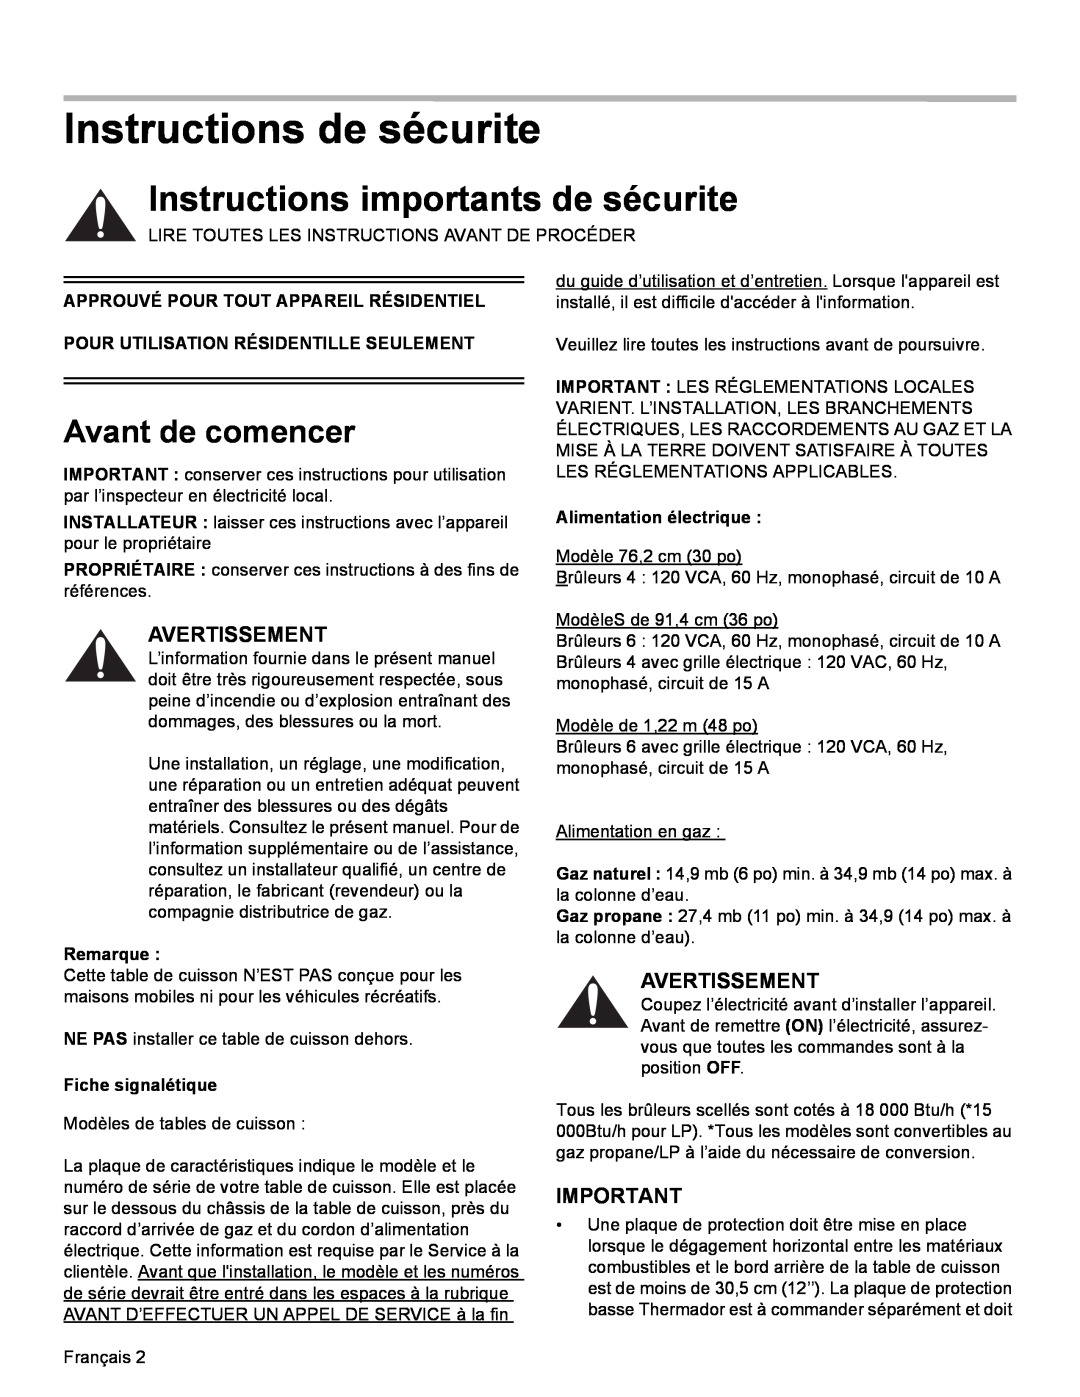 Thermador PCG30 Instructions de sécurite, Instructions importants de sécurite, Avant de comencer, Avertissement, Remarque 